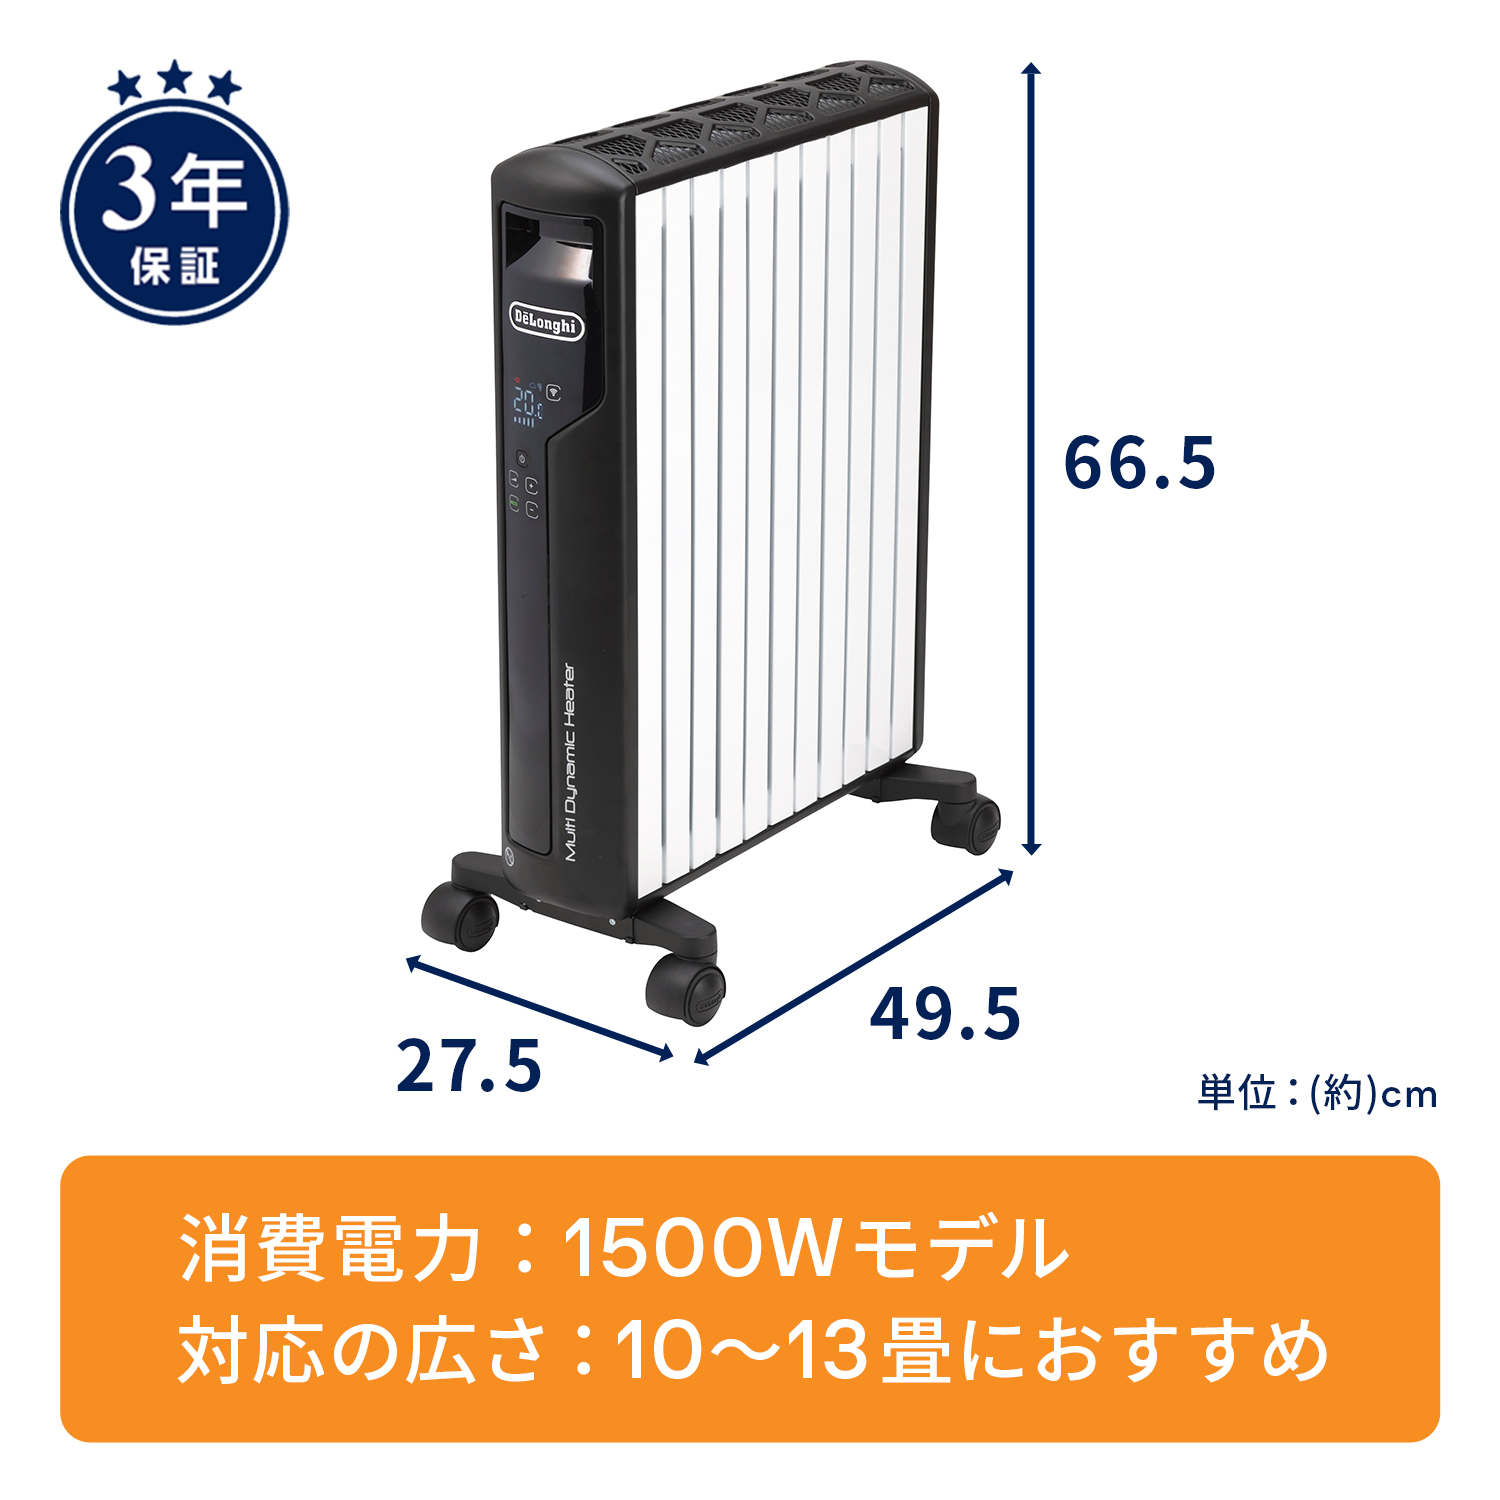 正規店の通販 DeLonghi マルチダイナミックヒーター1500Wモデル MDH15-BK オイルヒーター